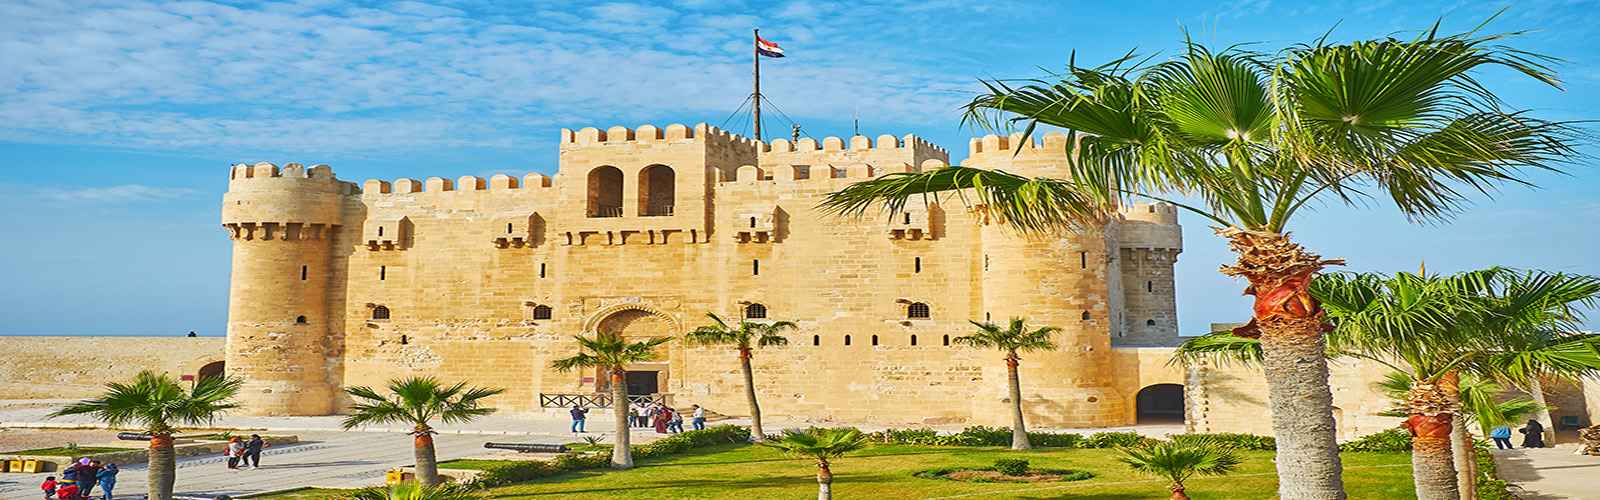 Citadel Of Qaitbay